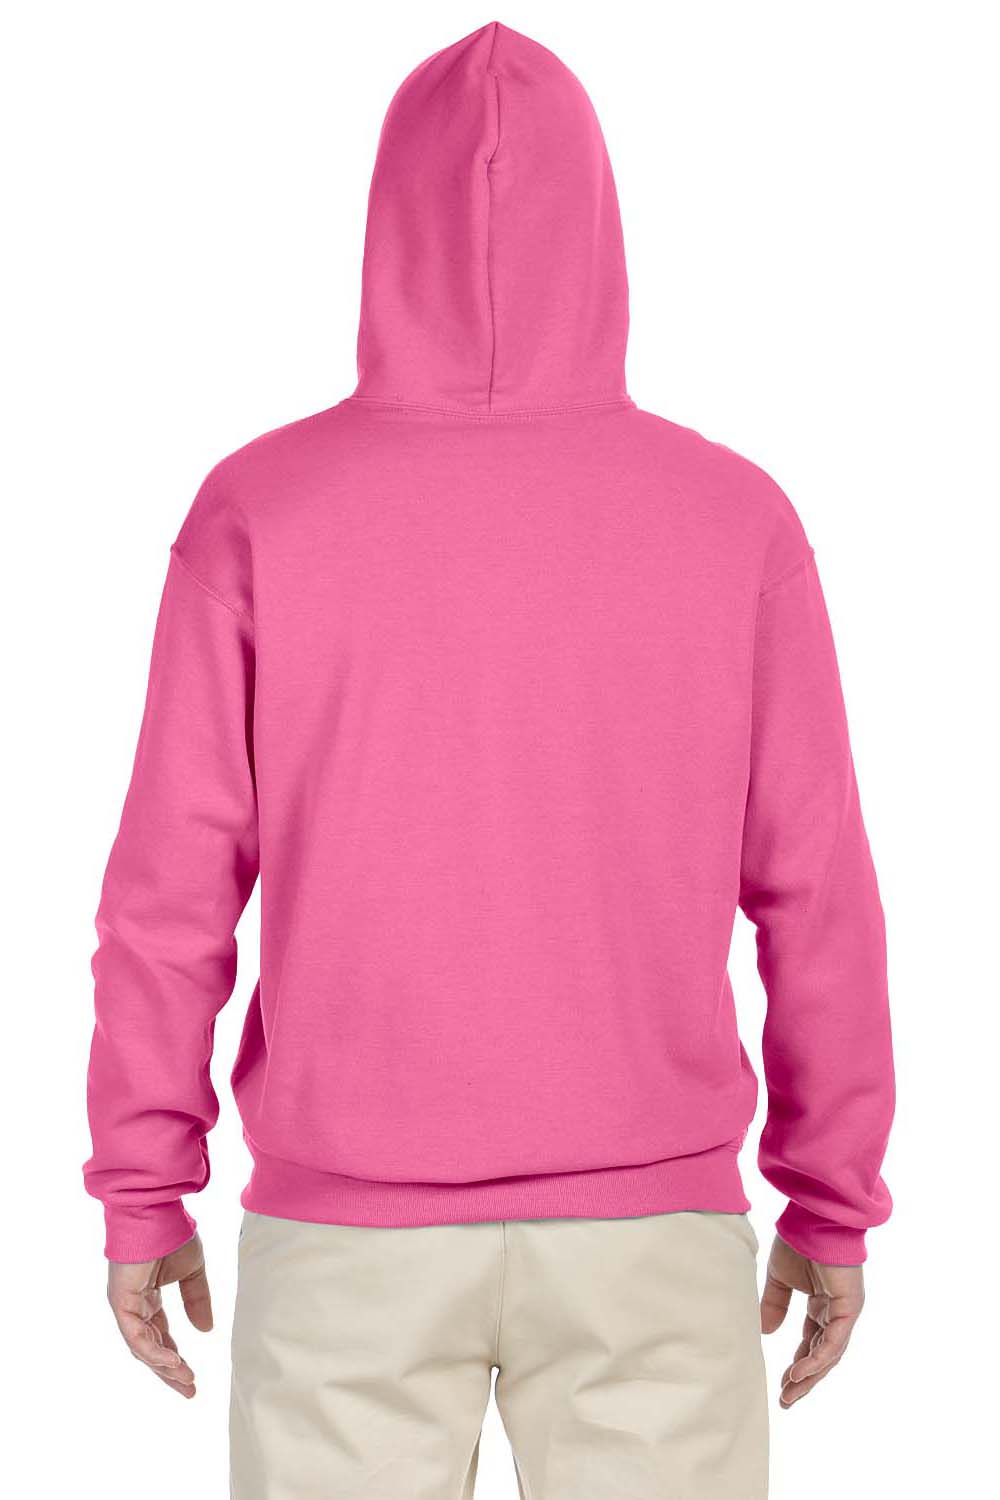 Jerzees 996 Mens NuBlend Fleece Hooded Sweatshirt Hoodie Neon Pink Back